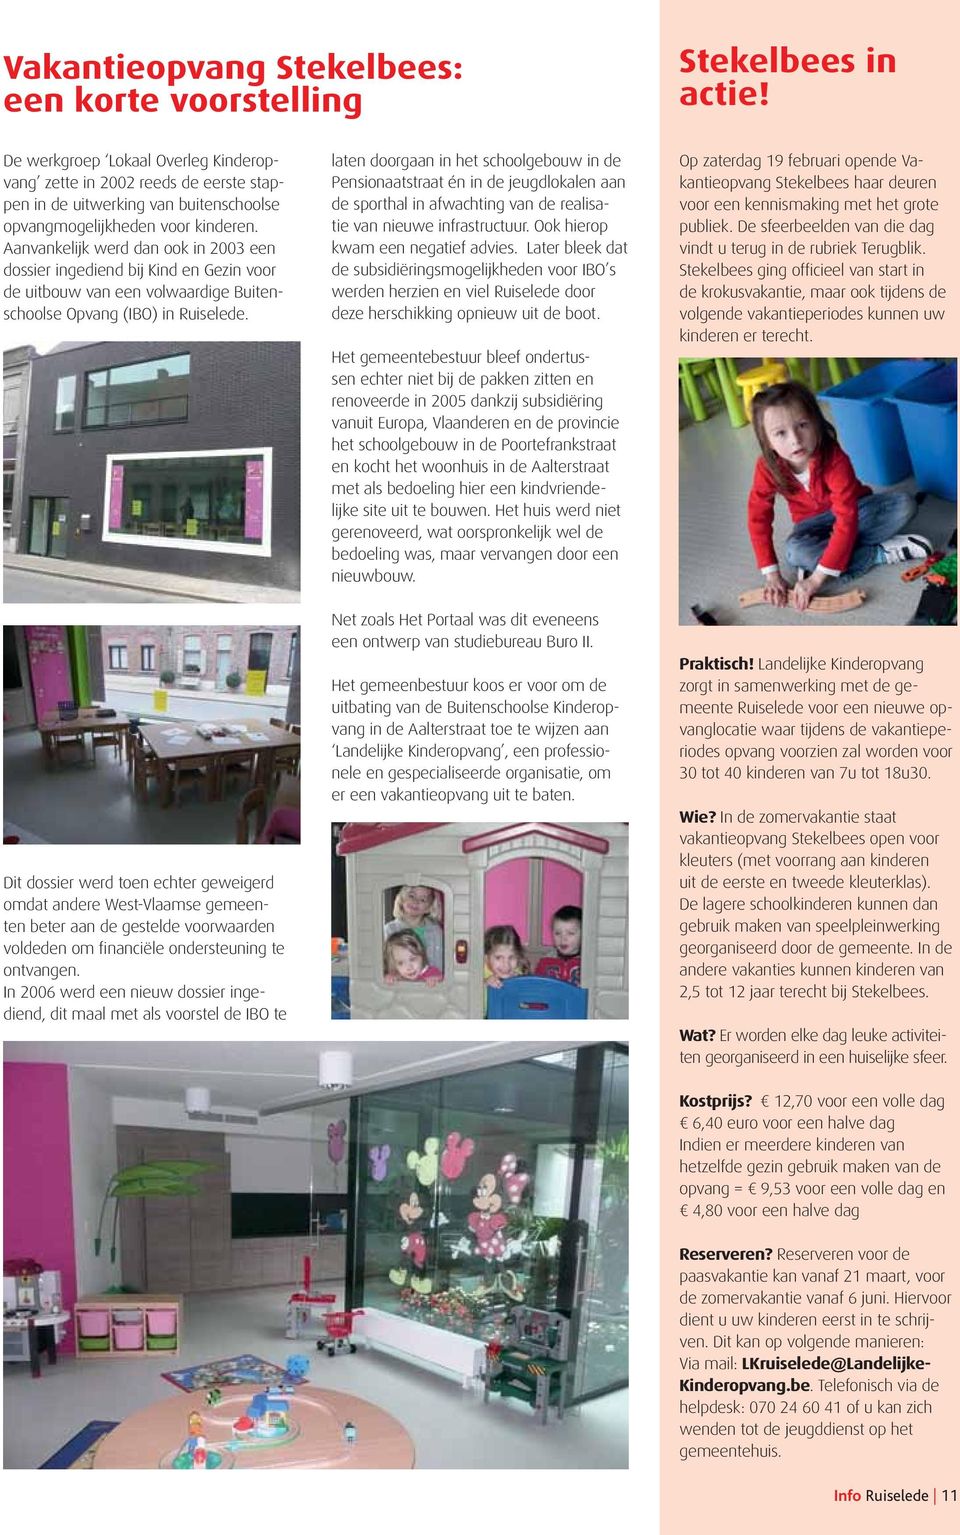 Aanvankelijk werd dan ook in 2003 een dossier ingediend bij Kind en Gezin voor de uitbouw van een volwaardige Buitenschoolse Opvang (IBO) in Ruiselede.